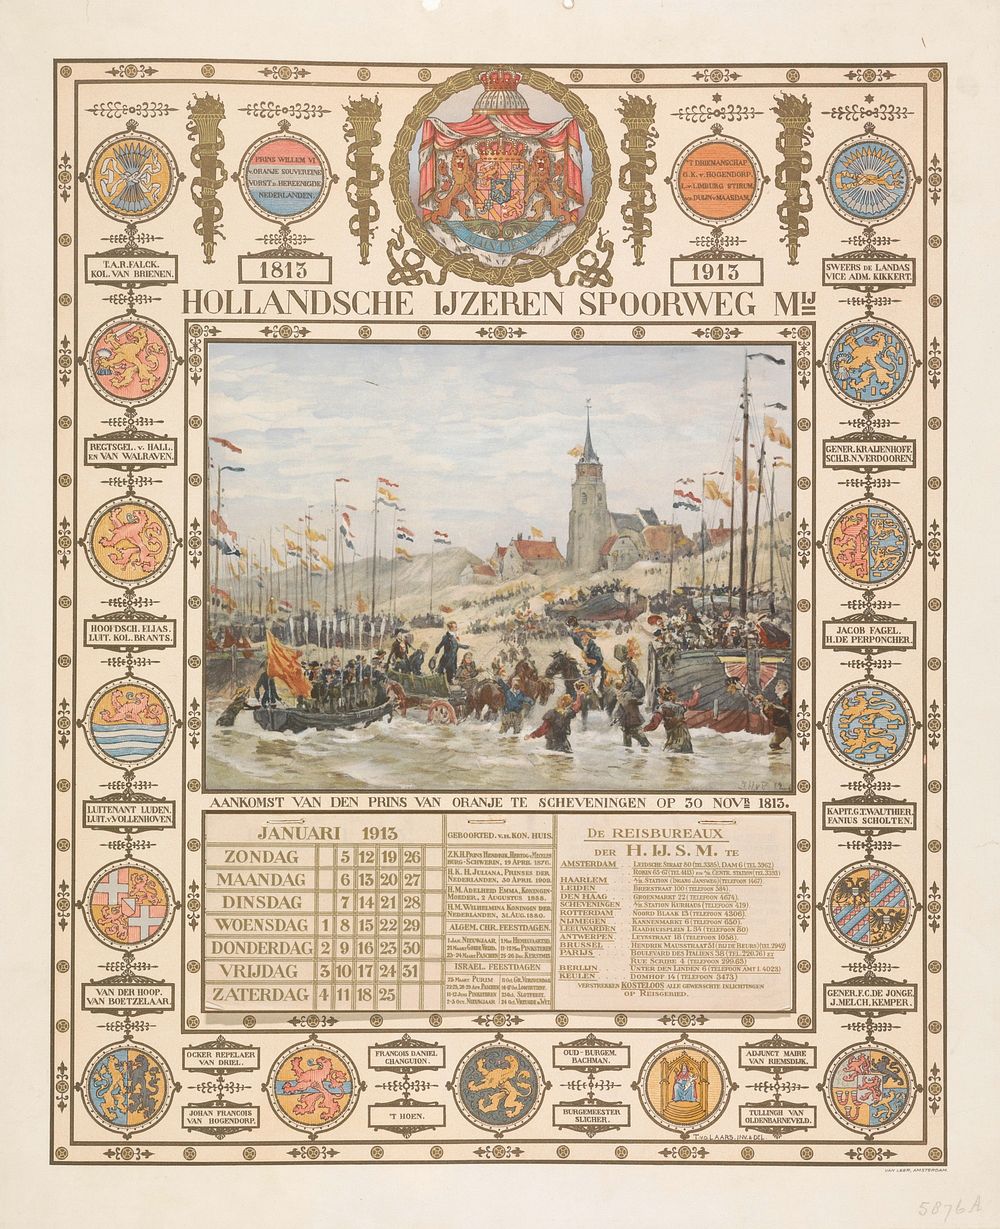 Kalender bij eeuwfeest aankomst van de prins van Oranje te Scheveningen, 1813-1913 (1912 - 1913) by Tiete van der Laars, Jan…